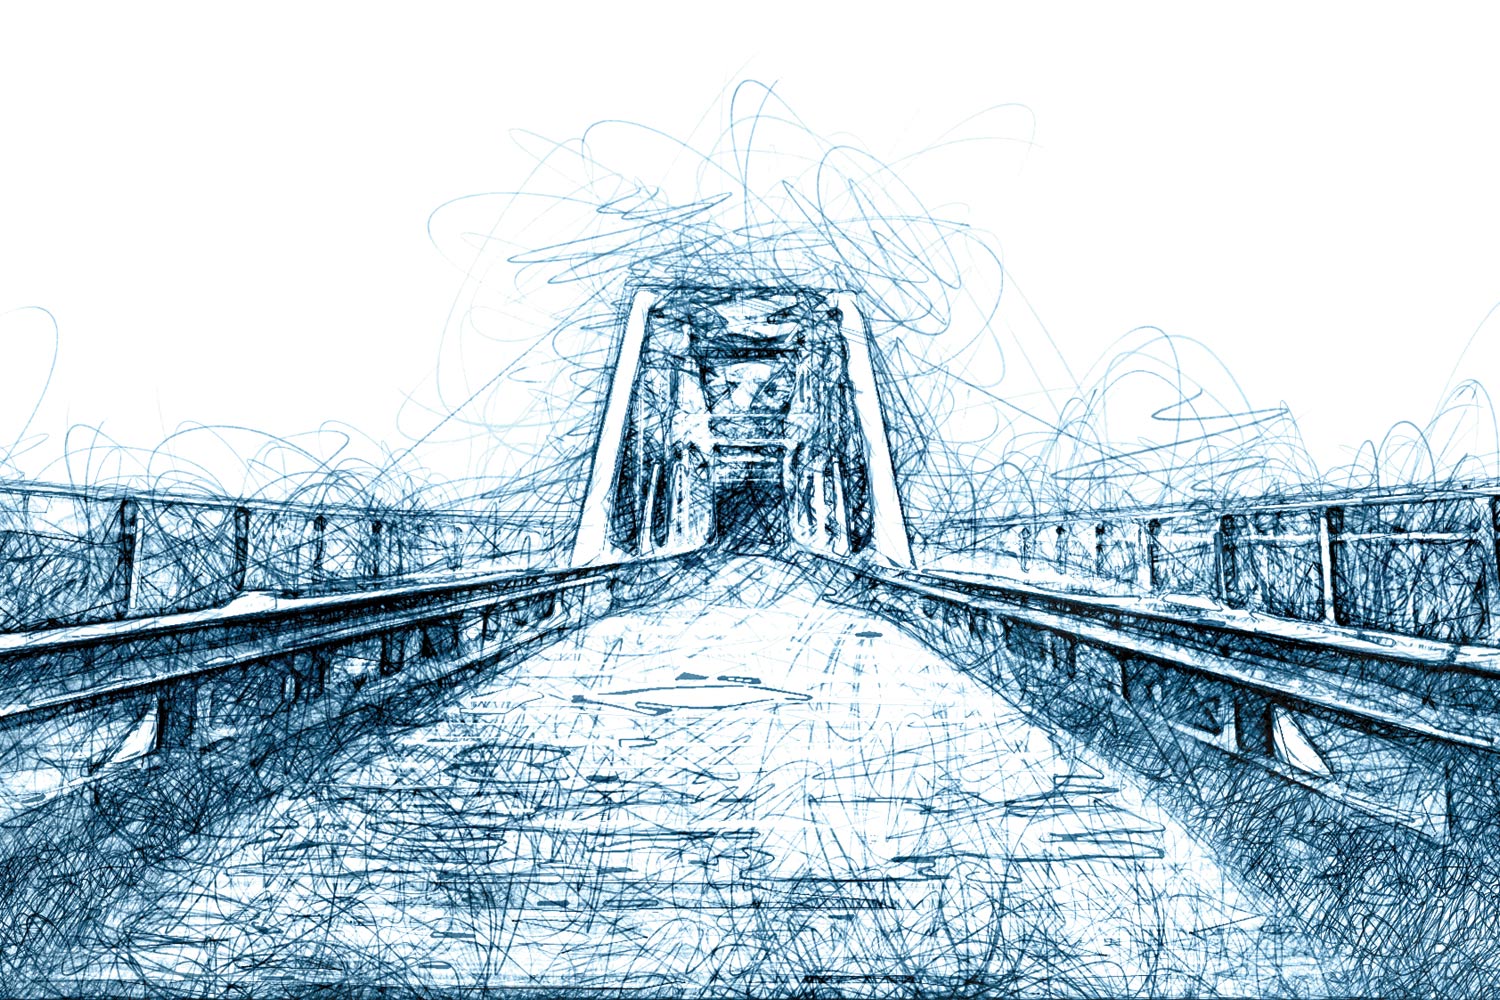 Stylized rendering of a bridge